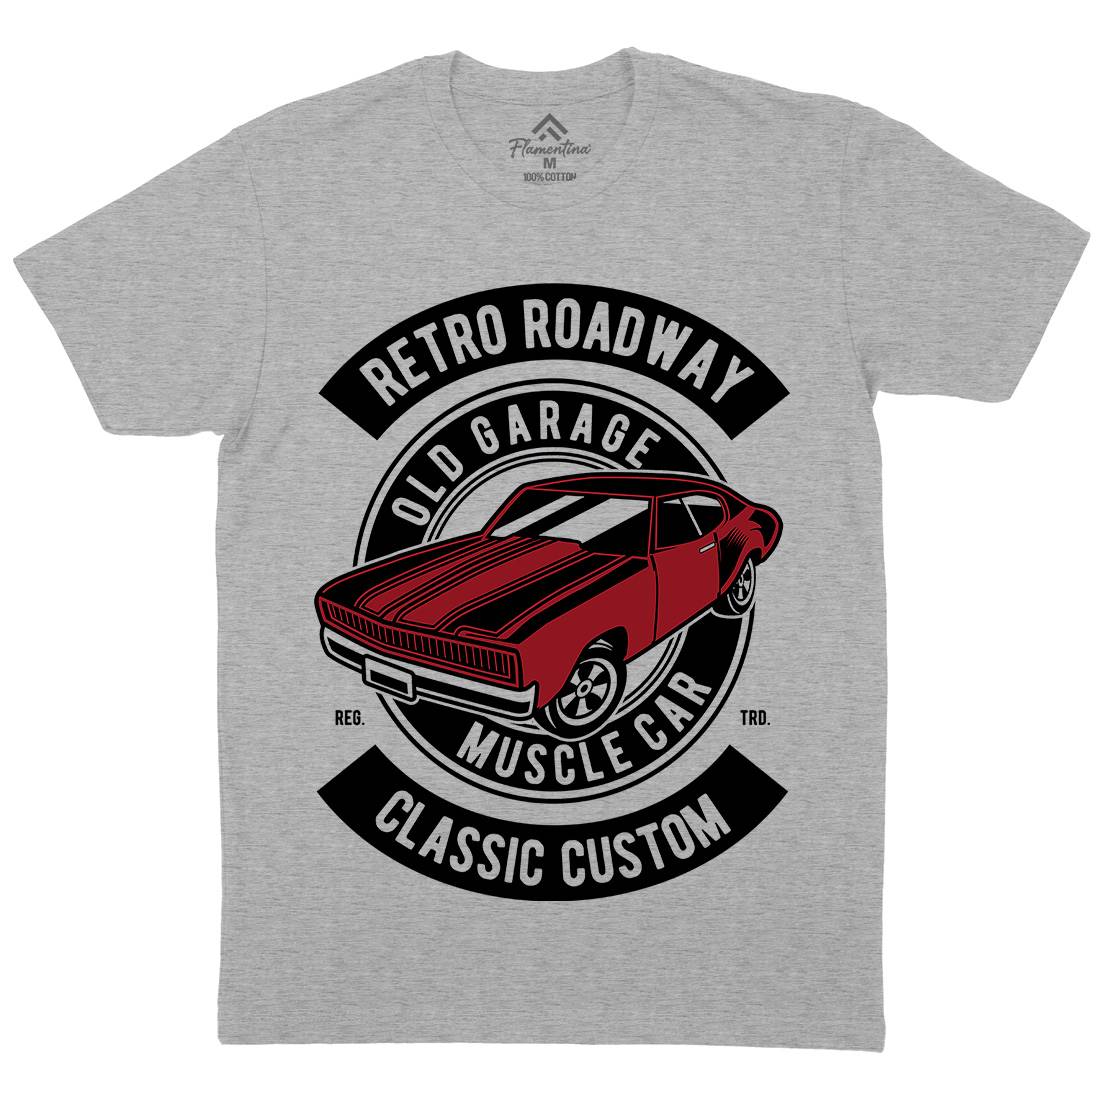 Retro Roadway Mens Crew Neck T-Shirt Cars D568